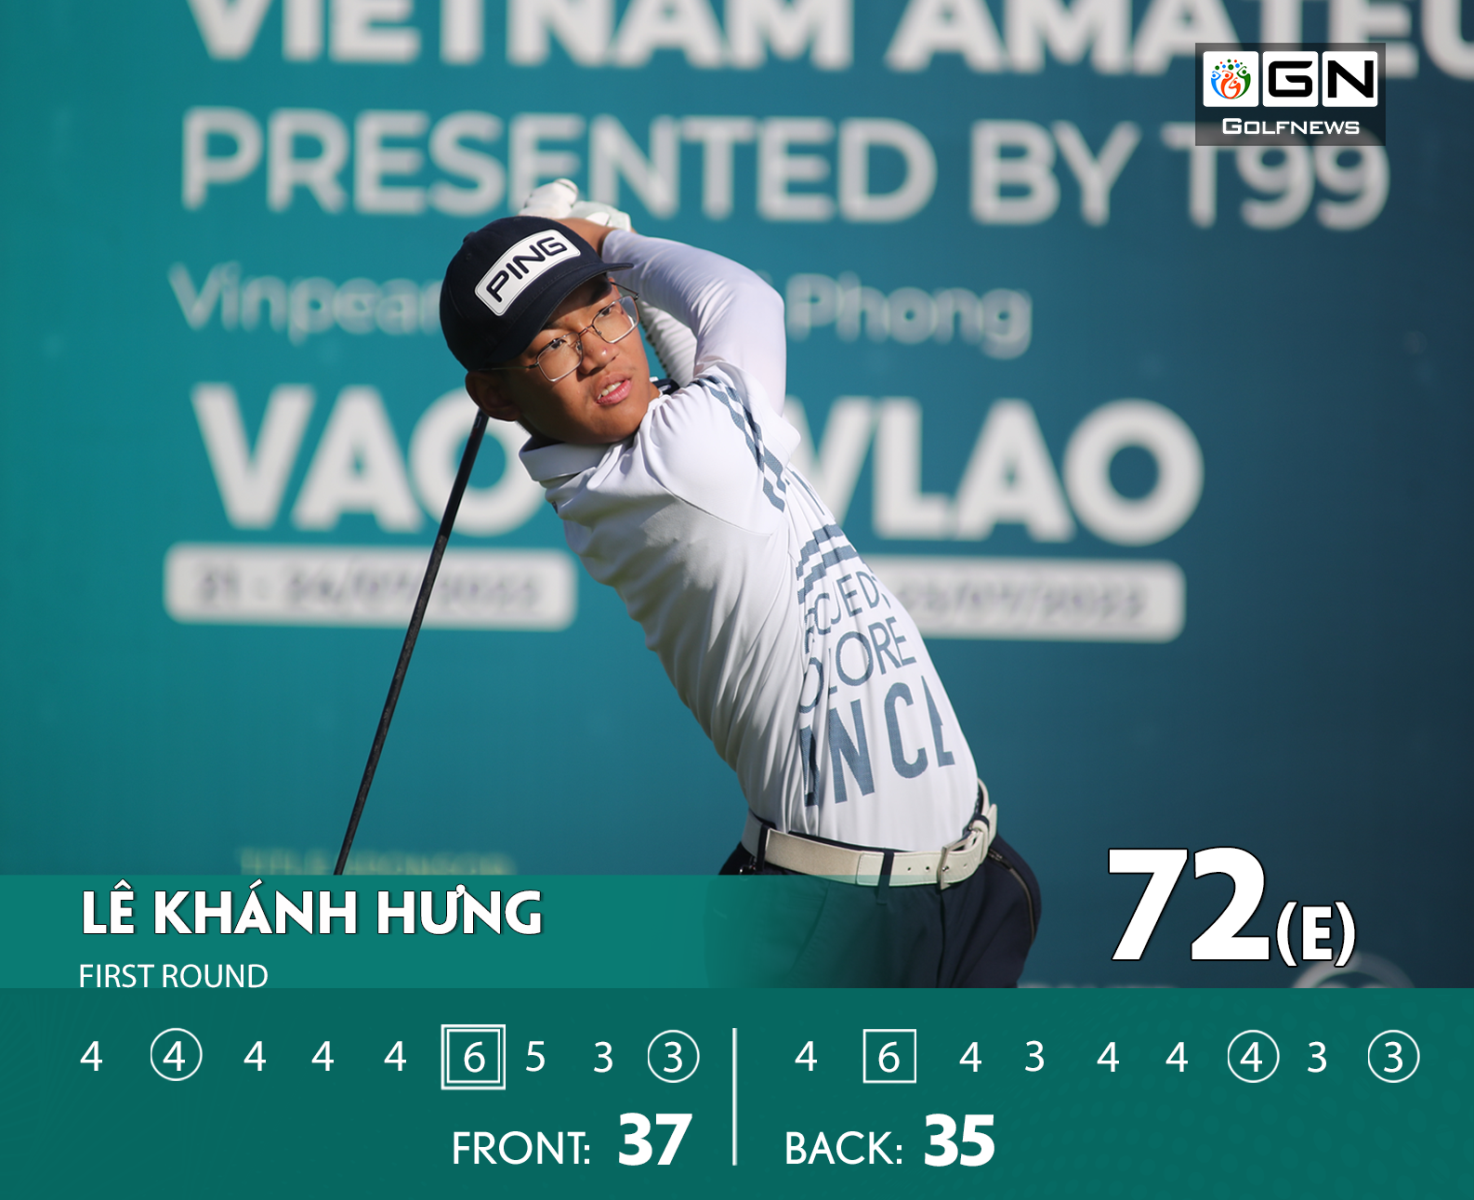 Giải Vô địch golf Nghiệp dư Việt Nam Mở rộng tranh Cup T99: Lê Khánh Hưng giữ đỉnh bảng, Nguyễn Anh Minh áp sát phía sau